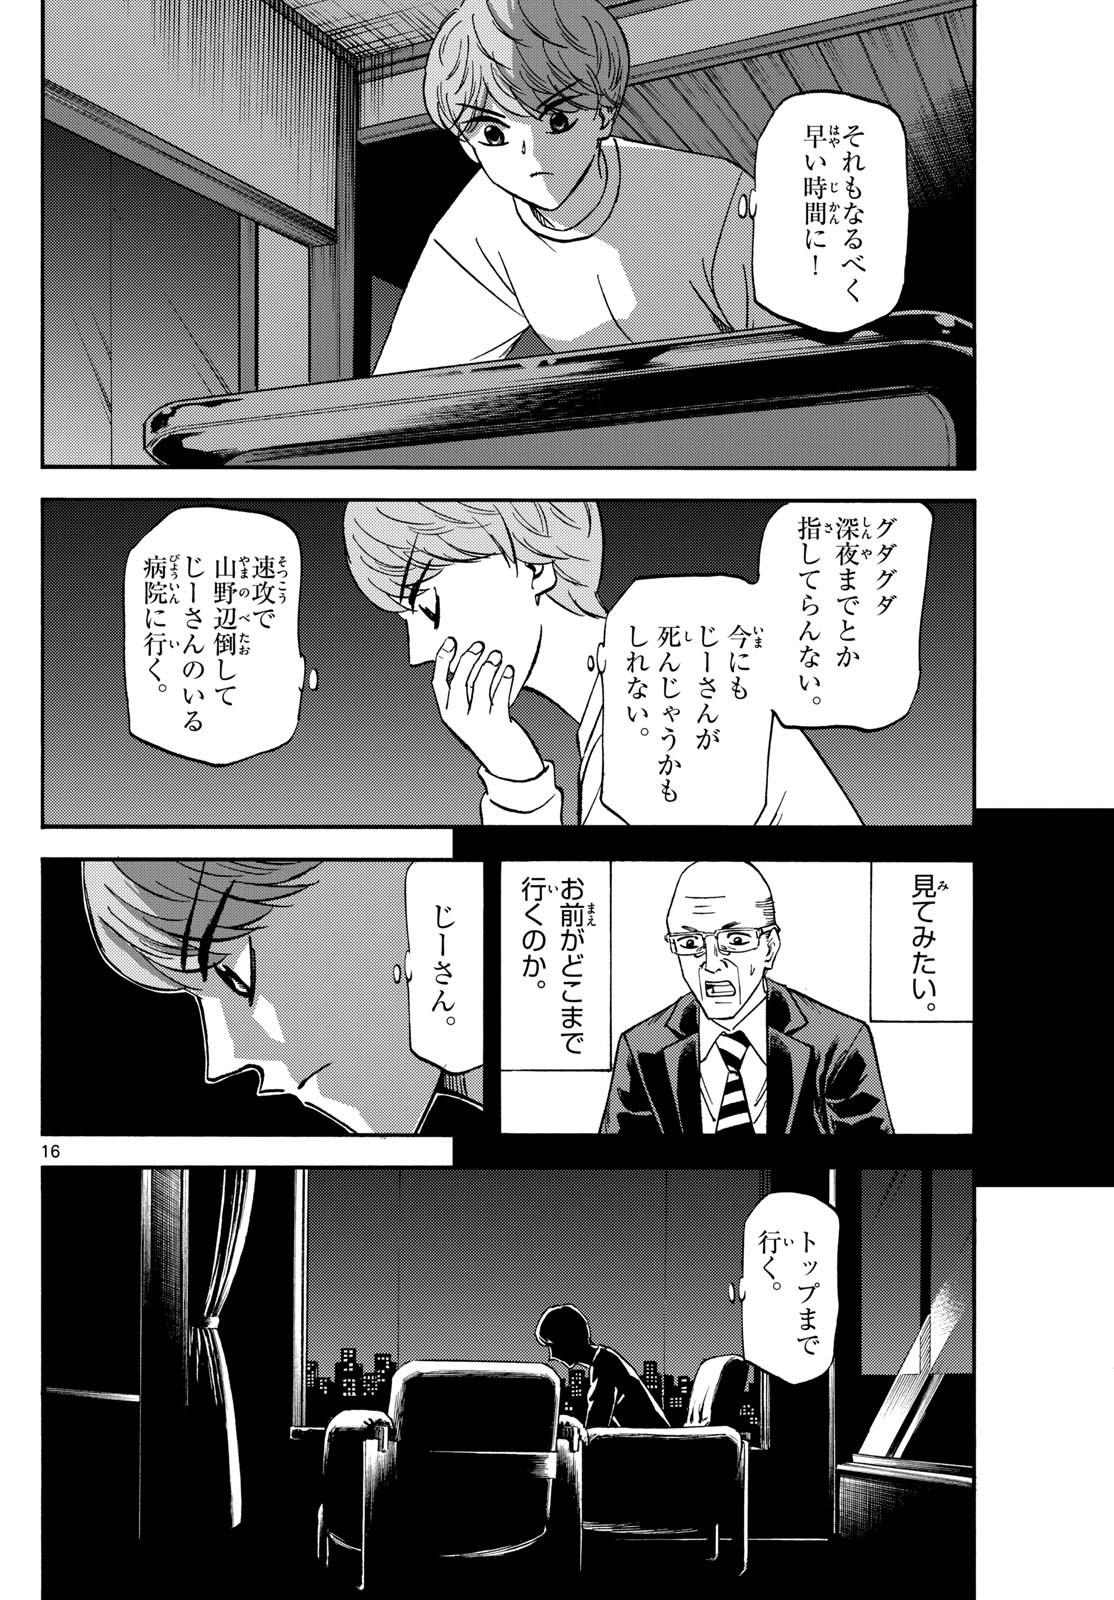 Ryu-to-Ichigo - Chapter 176 - Page 16